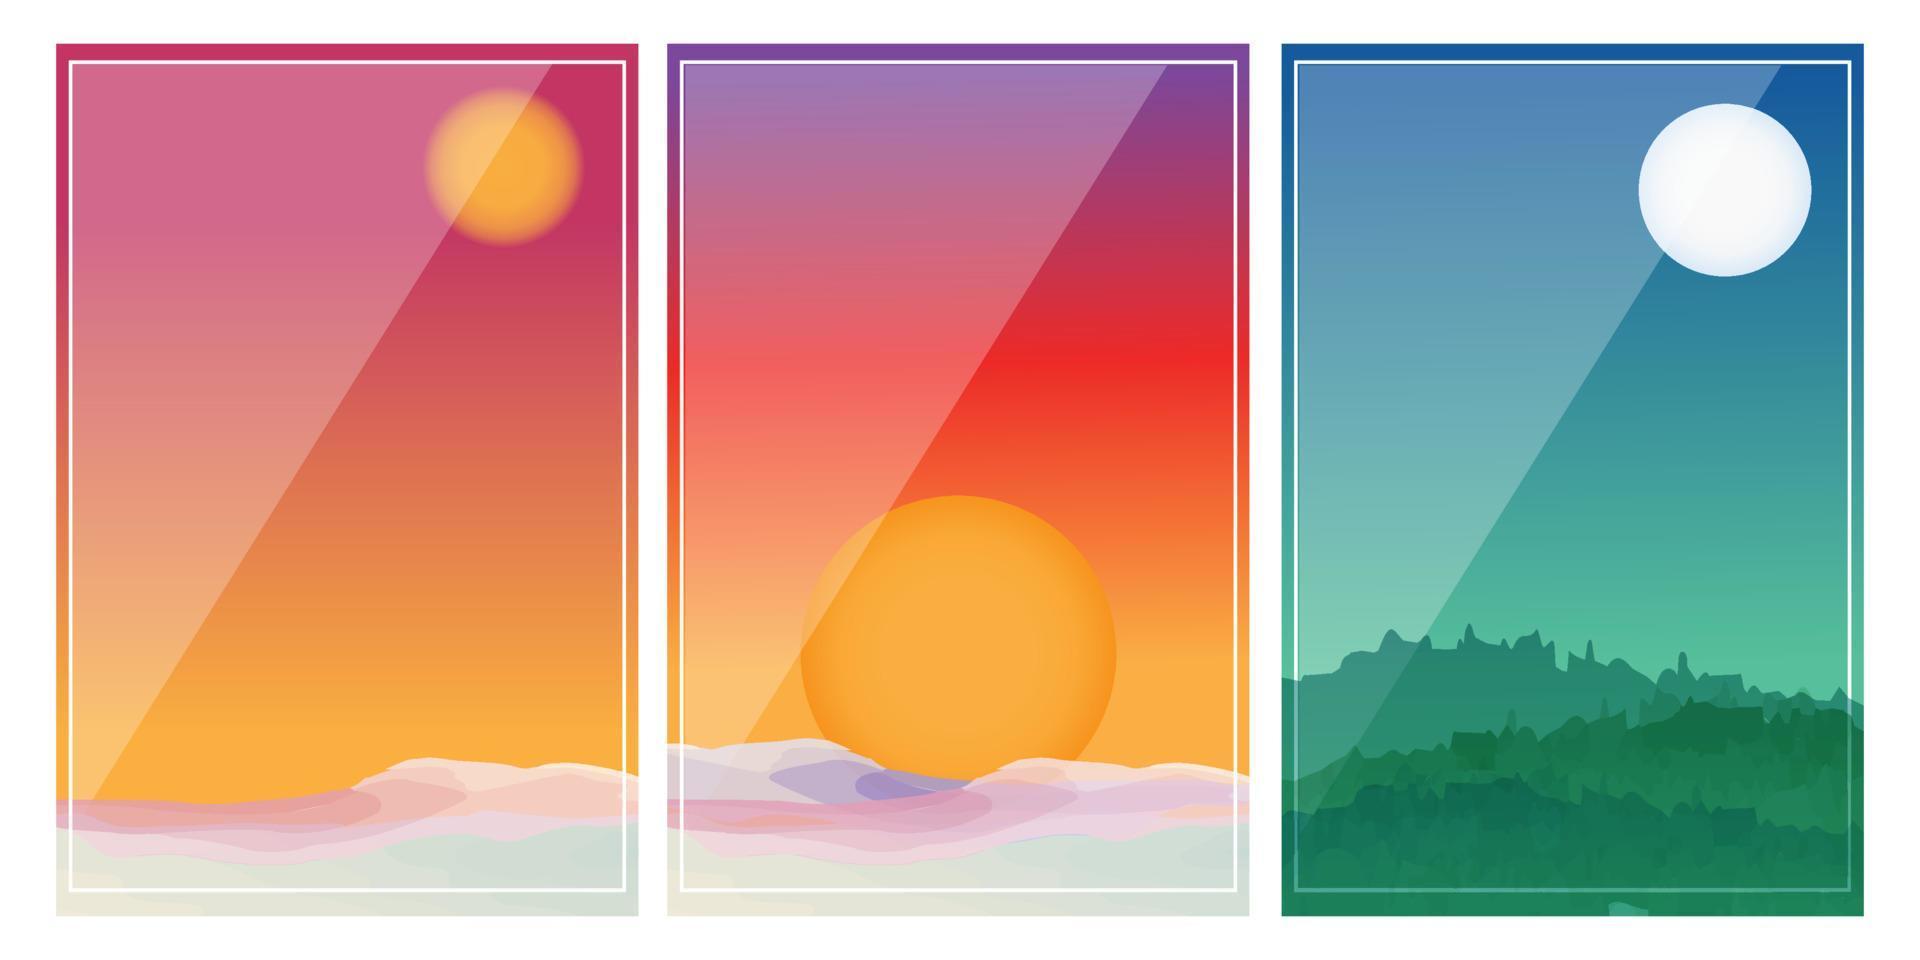 sfondo del tramonto con il vettore del modello d'onda. modello astratto con motivo geometrico. oggetto di montagna e oceano in stile orientale.